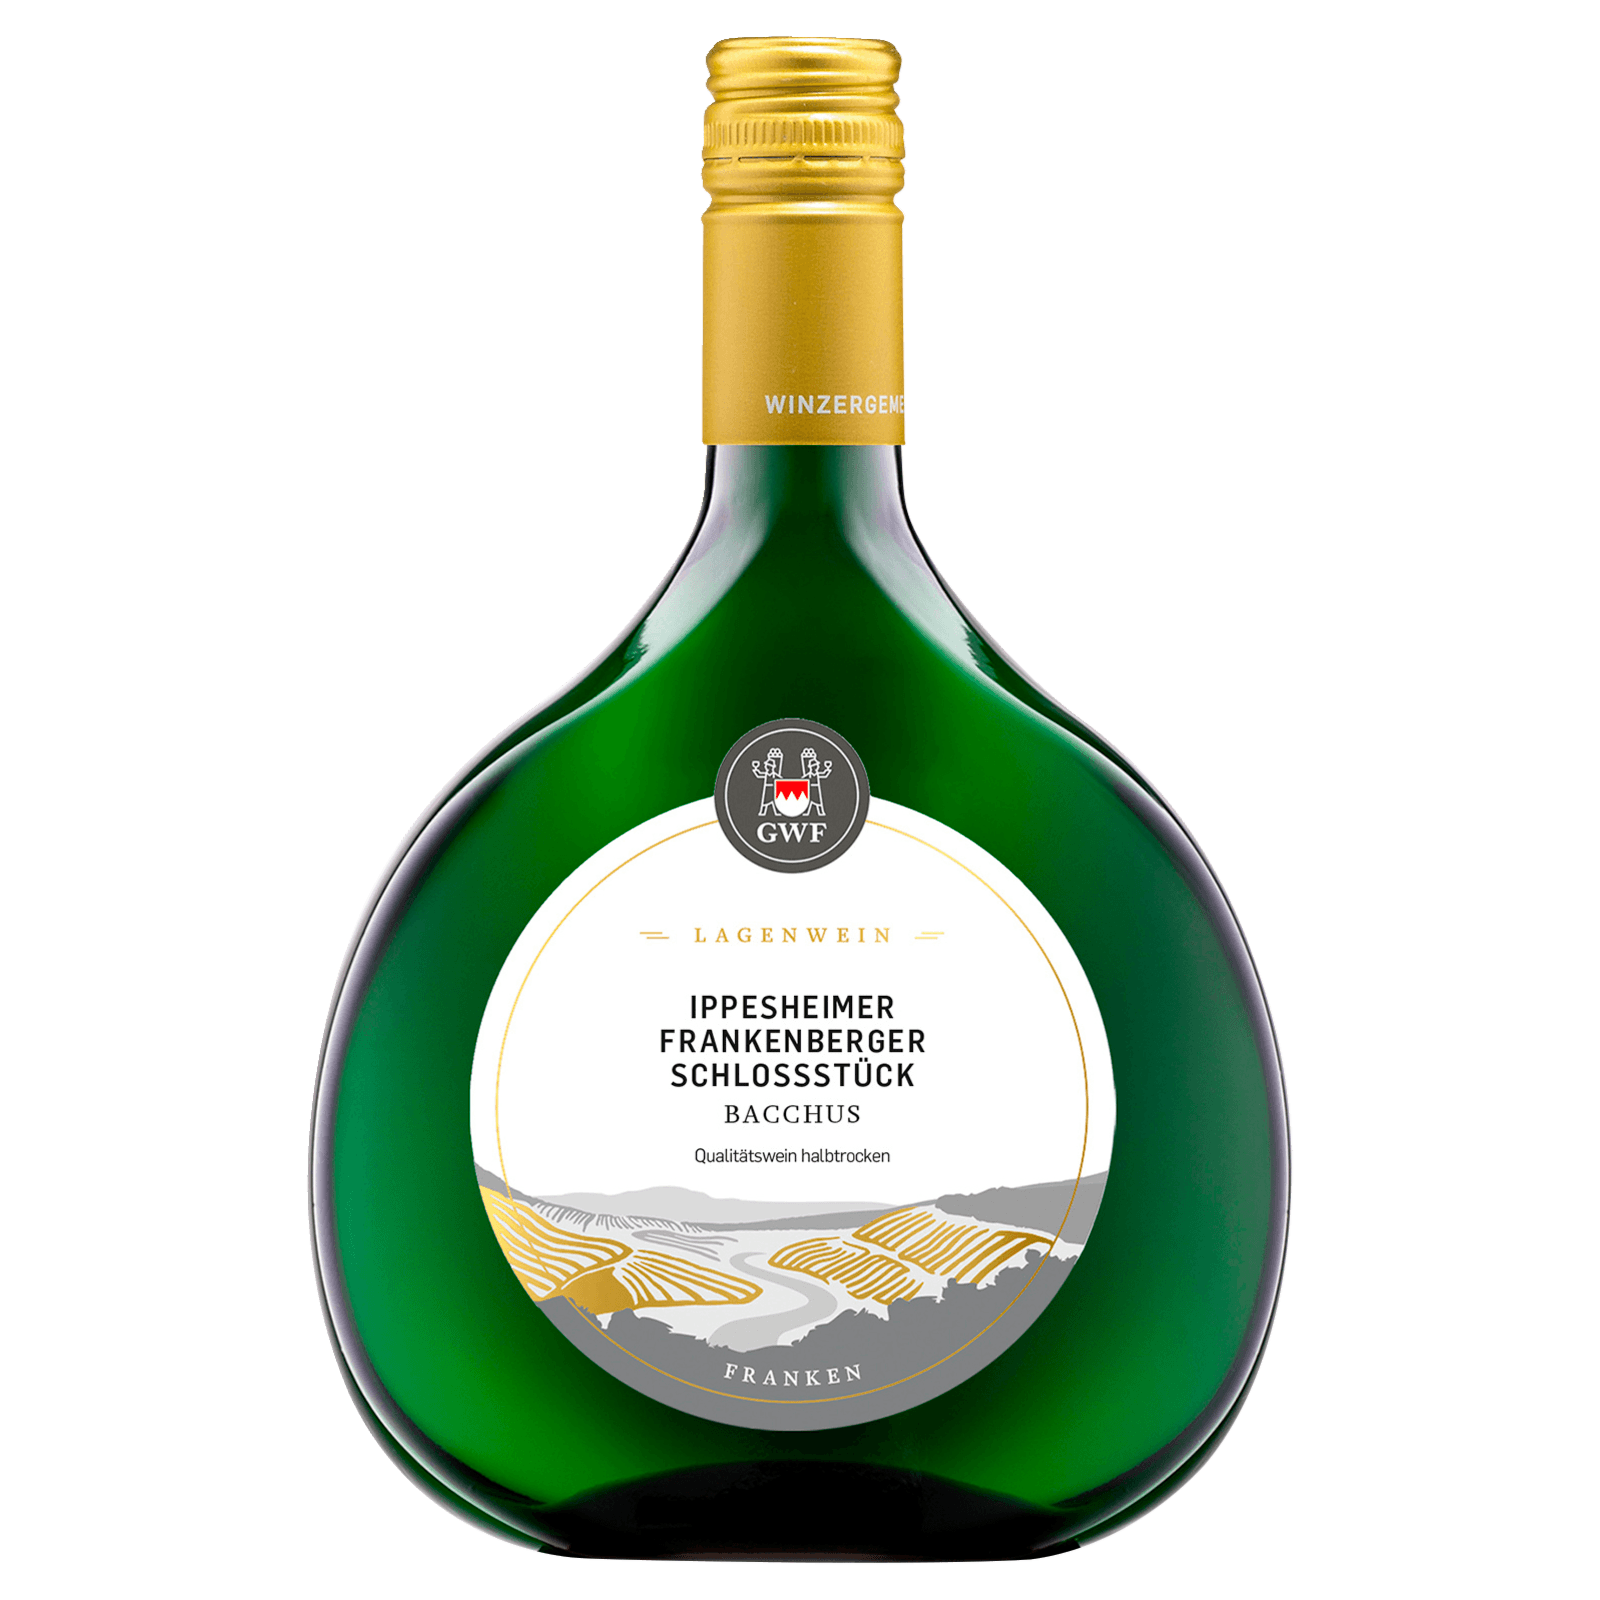 GWF Ippesheimer Frankenberger Schlossstück Weißwein QbA bei Bacchus bestellen! halbtrocken REWE 0,75l online